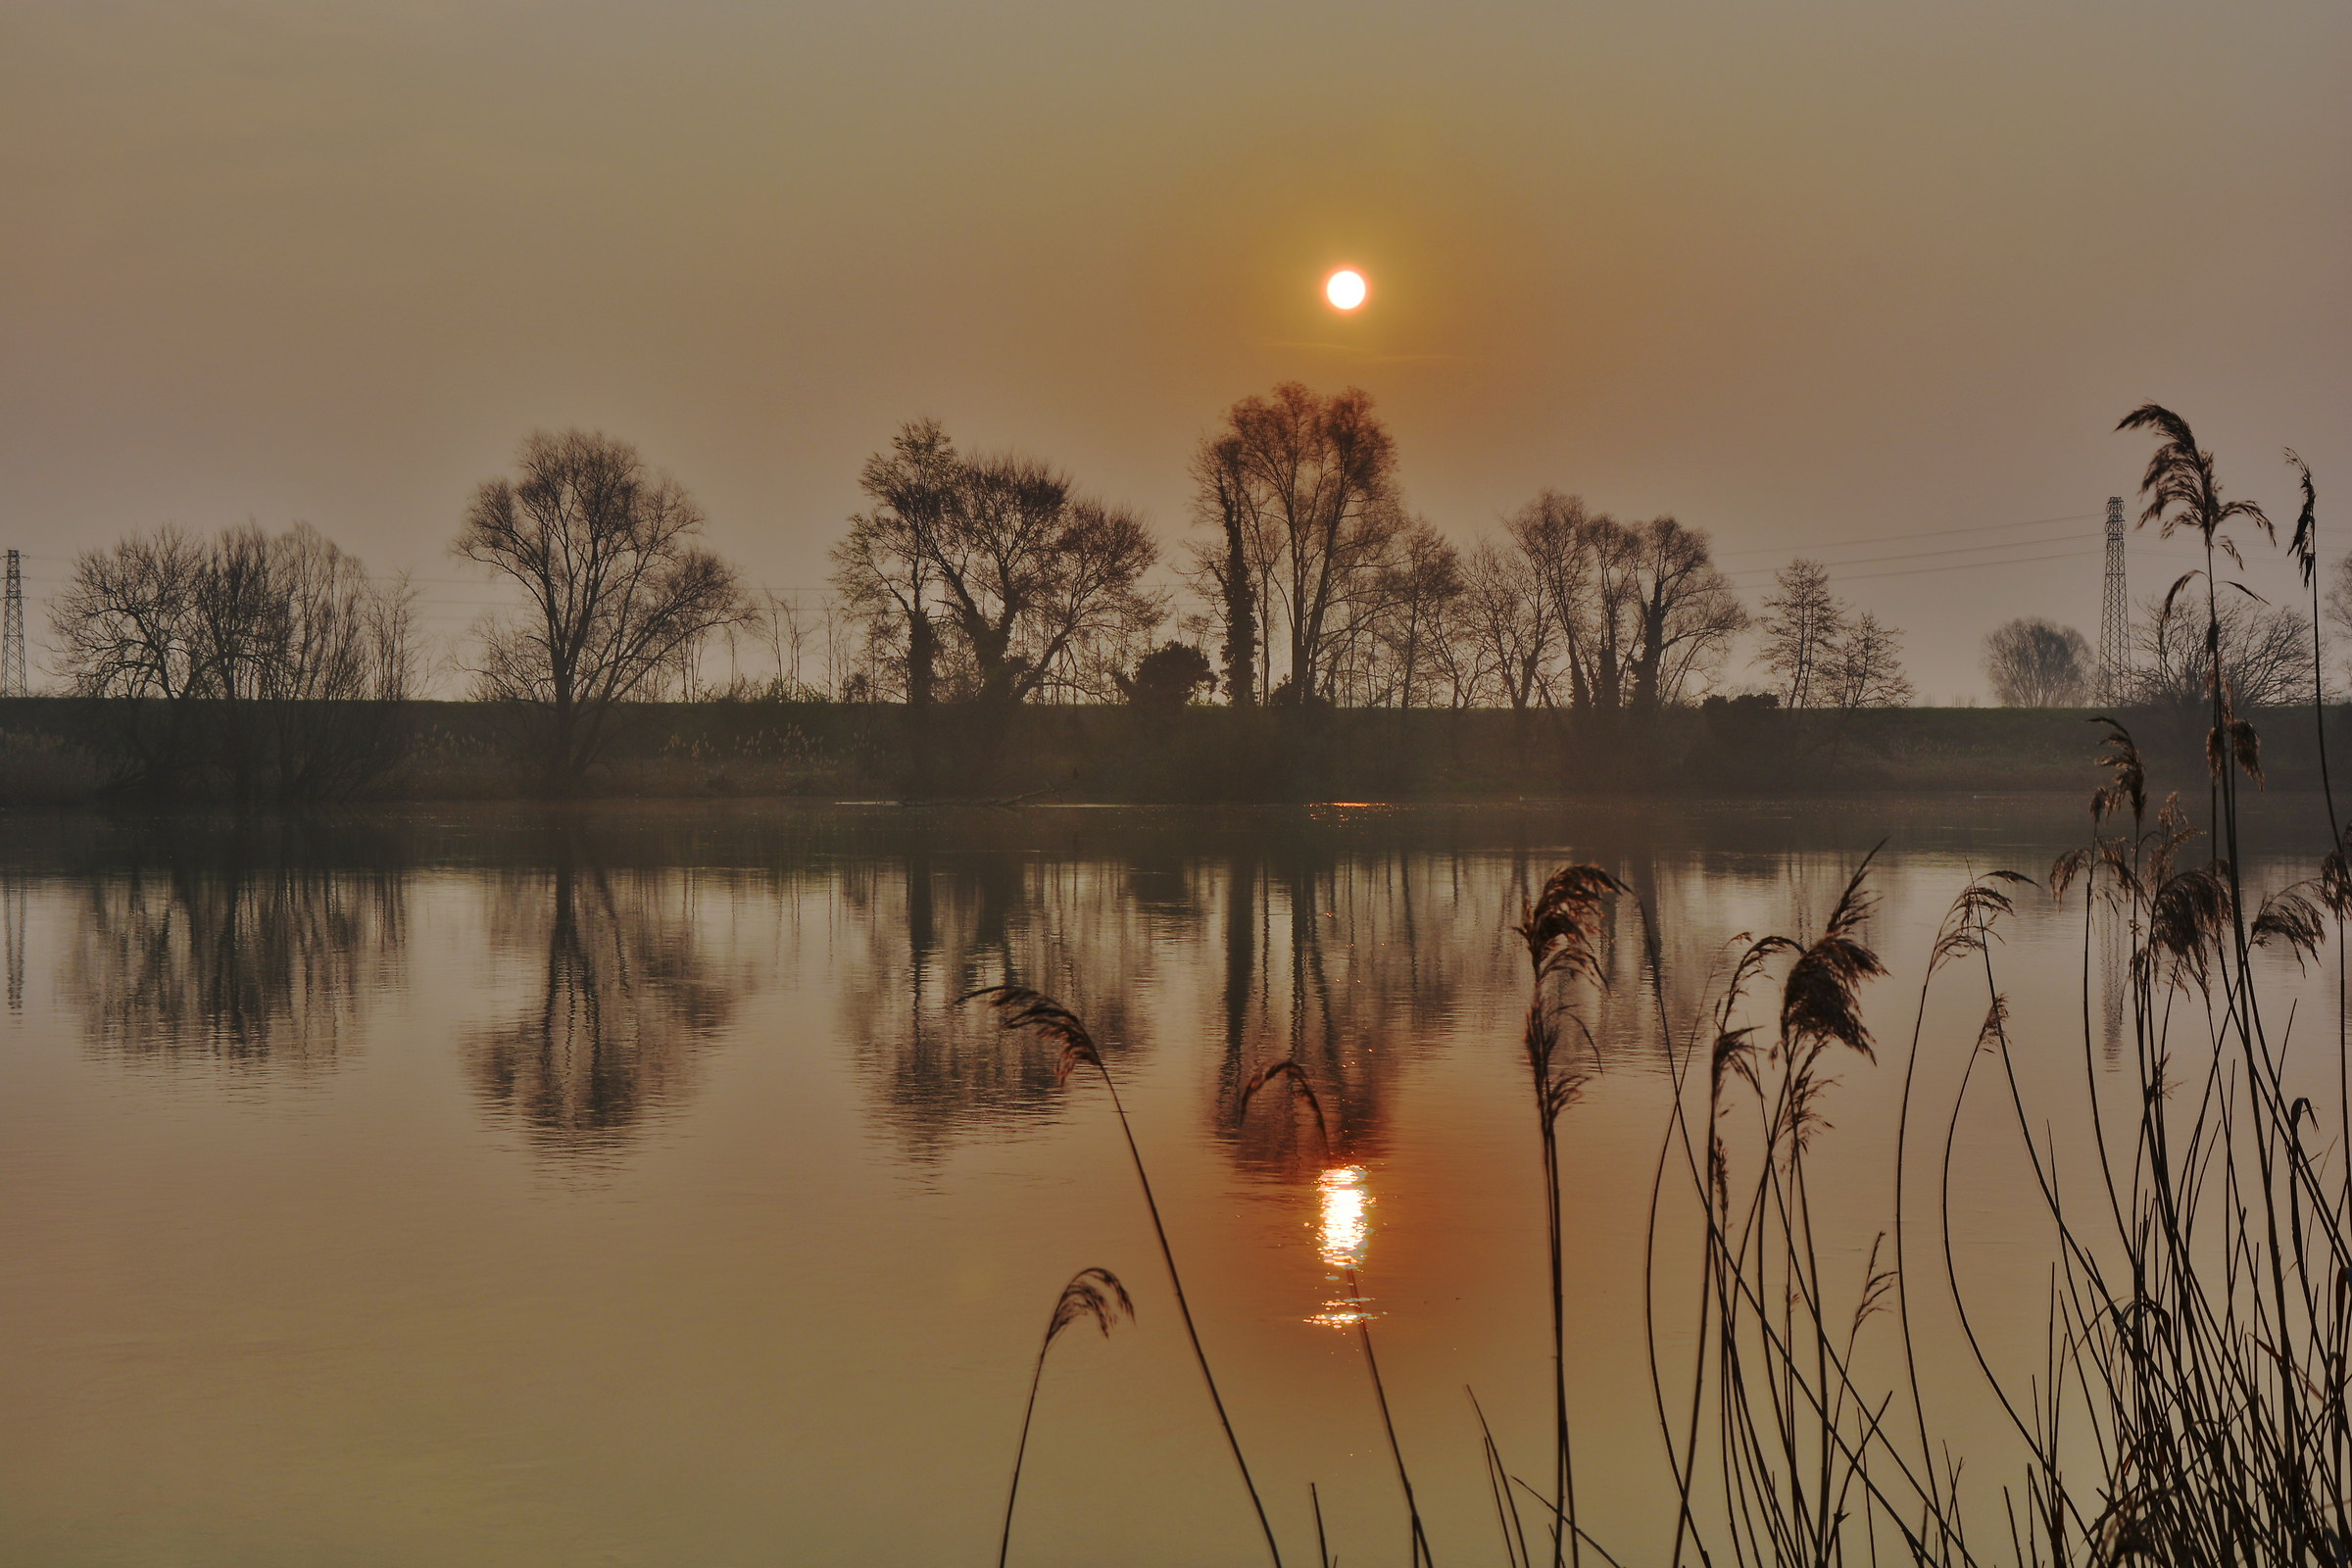 sunrise @ reflection...